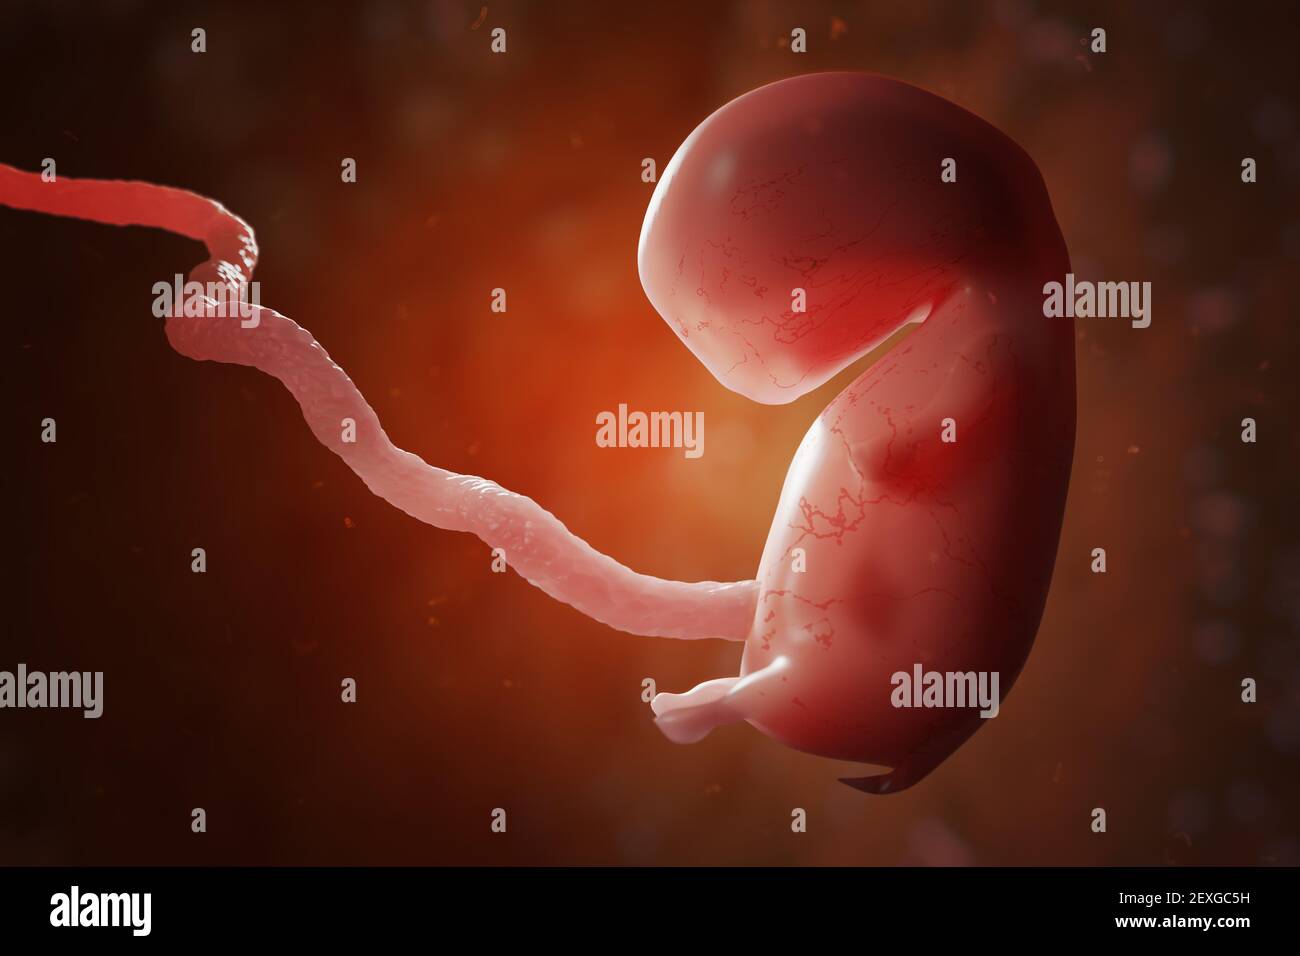 Menschlicher Embryo oder Fötus mit Plazenta. IVF und künstliche Befruchtung Konzept. 3D gerenderte Abbildung. Stockfoto